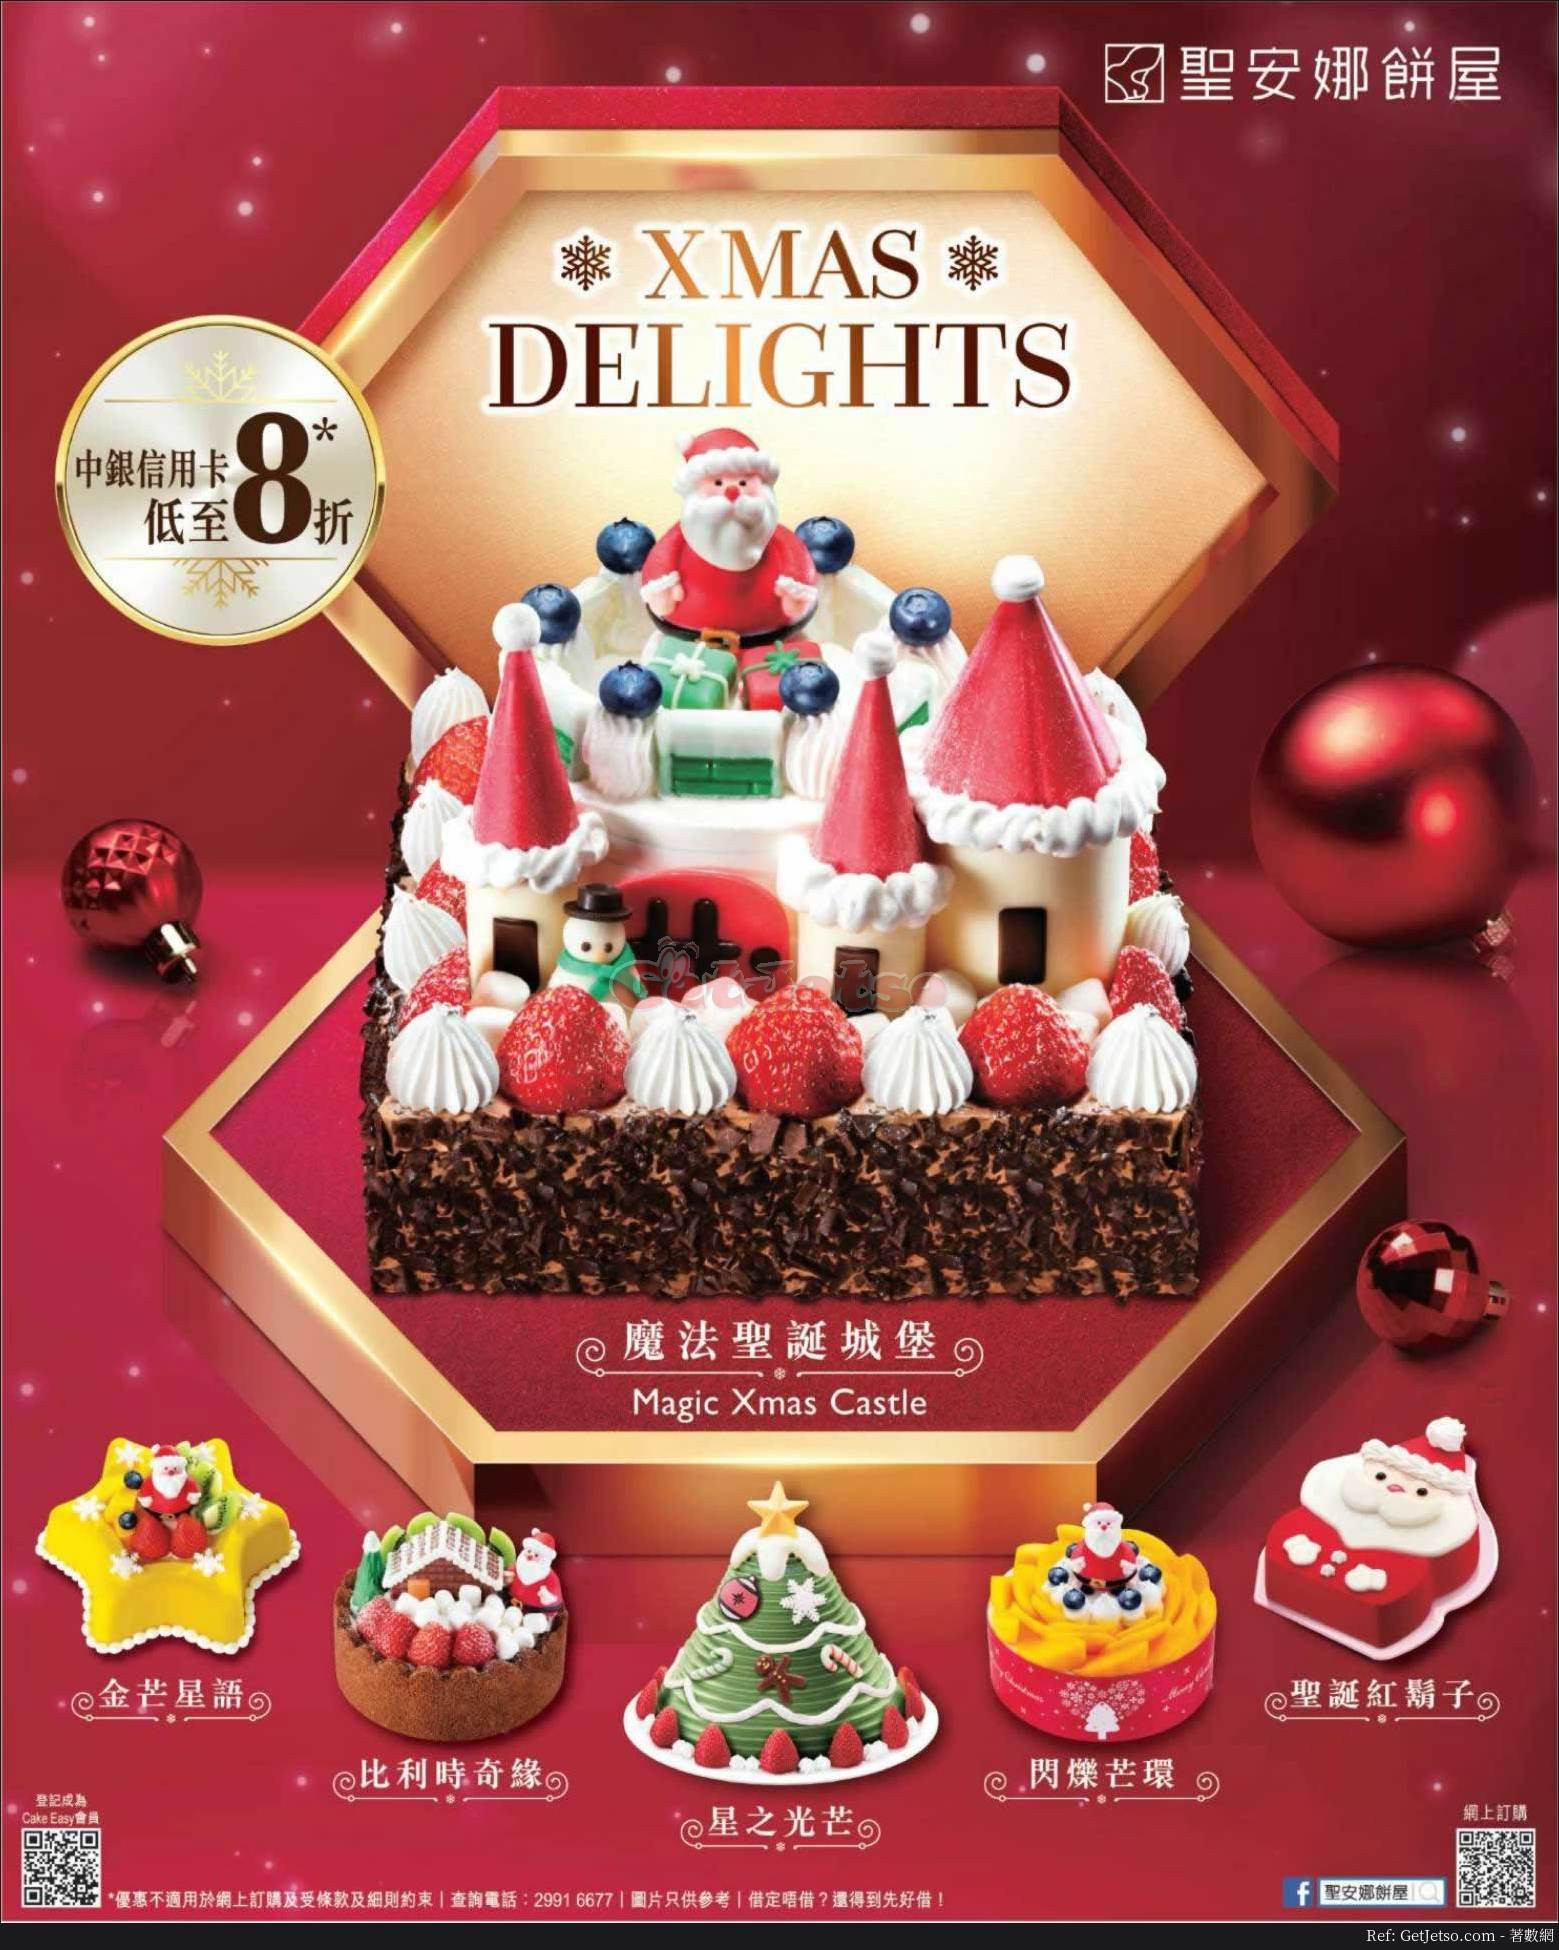 聖安娜餅屋低至8折聖誕蛋糕預訂優惠@中銀信用卡(18年12月13日起)圖片1